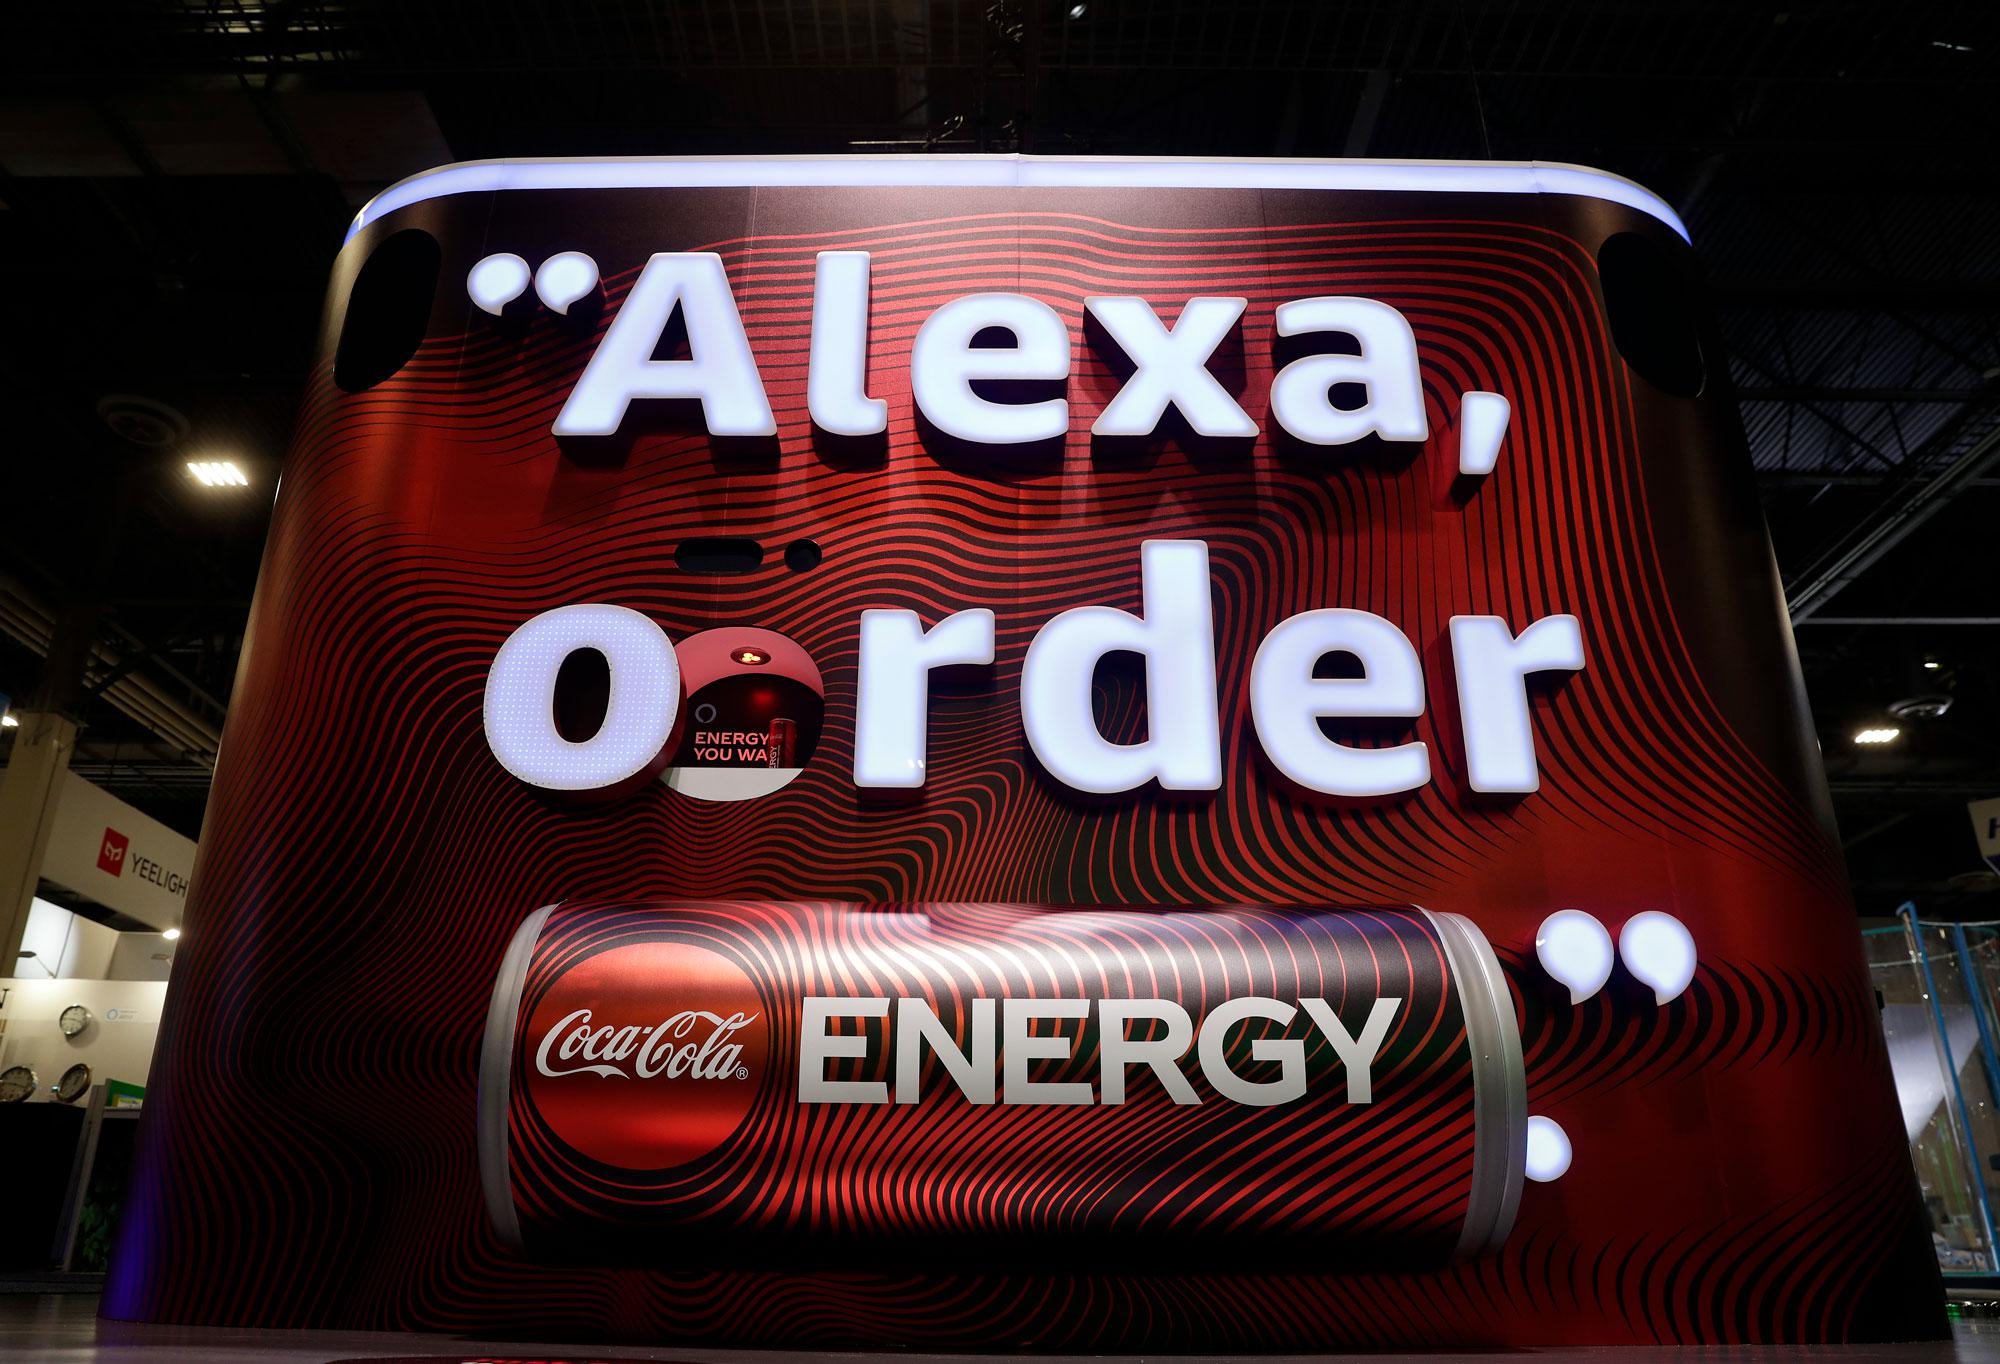 Amazon Alexa Coca-Cola Energy Wall